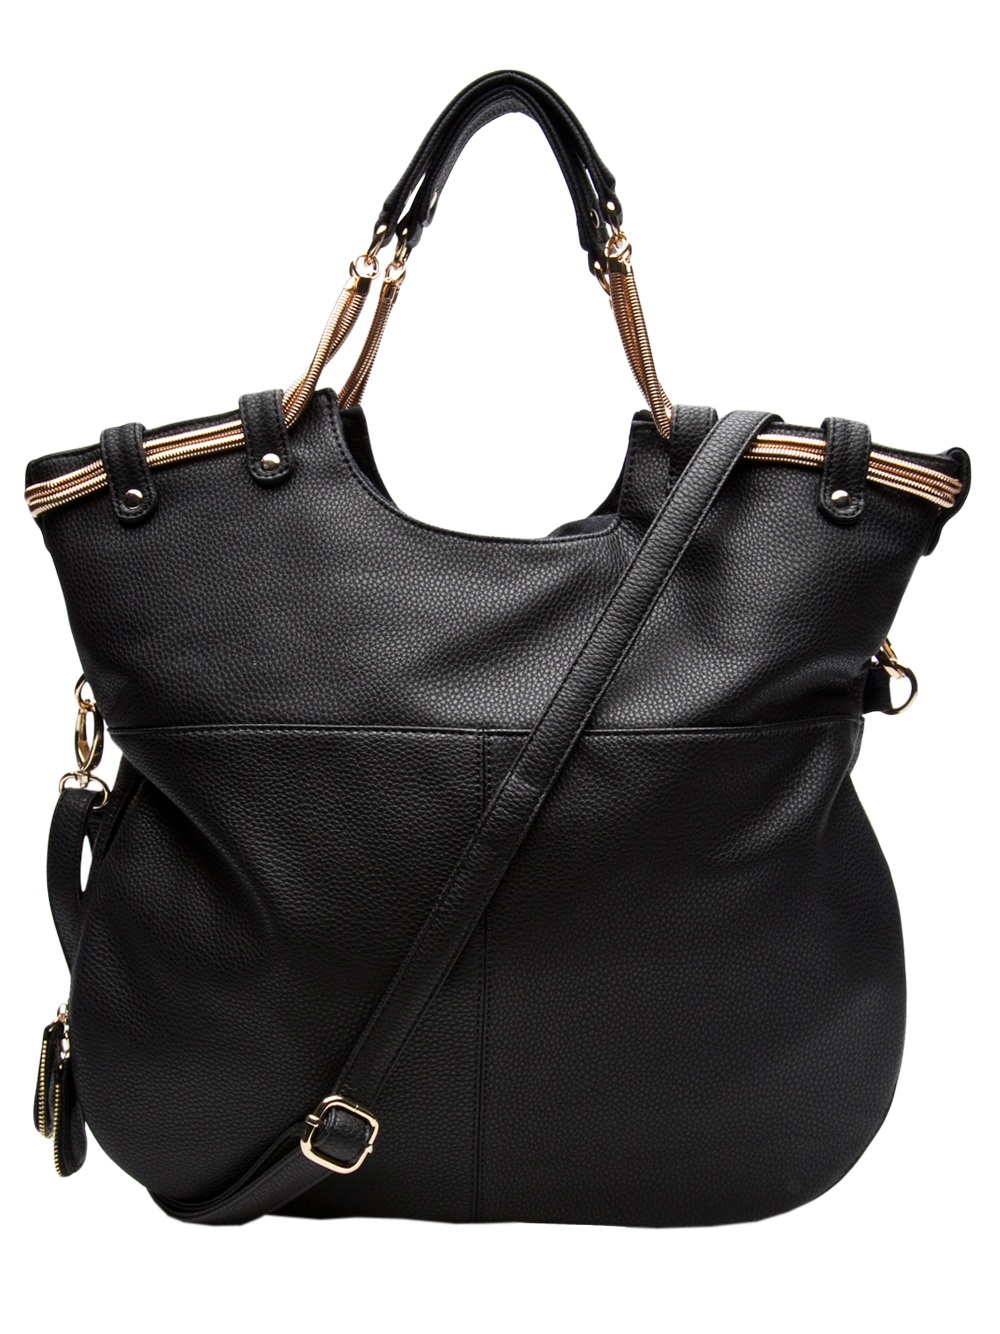 Deux Lux Laurel Canyon Messenger Bag in Black | Lyst